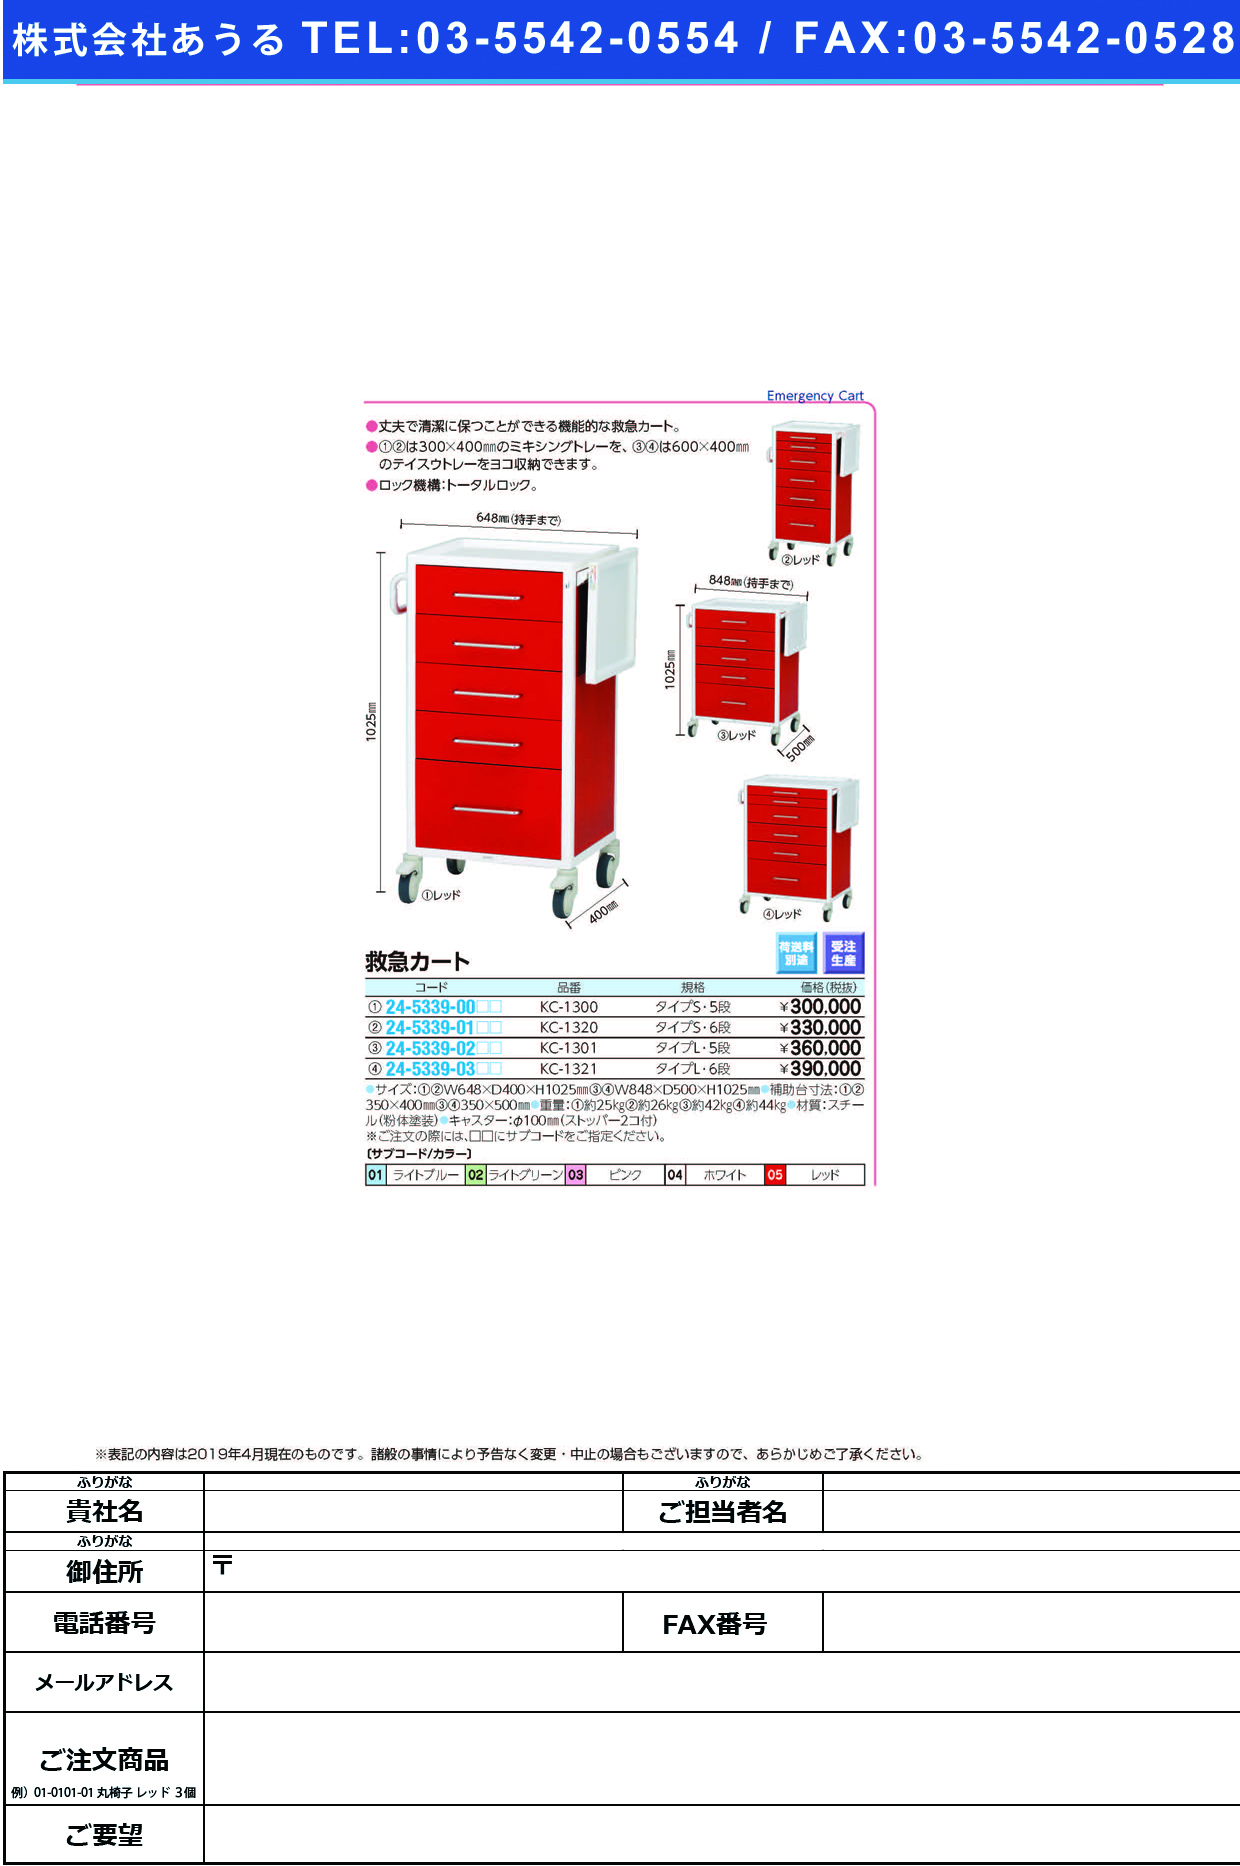 (24-5339-02)救急カートタイプＬ KC-1301(5ﾀﾞﾝ) ｷｭｳｷｭｳｶｰﾄﾀｲﾌﾟL ピンク(ケルン)【1台単位】【2019年カタログ商品】